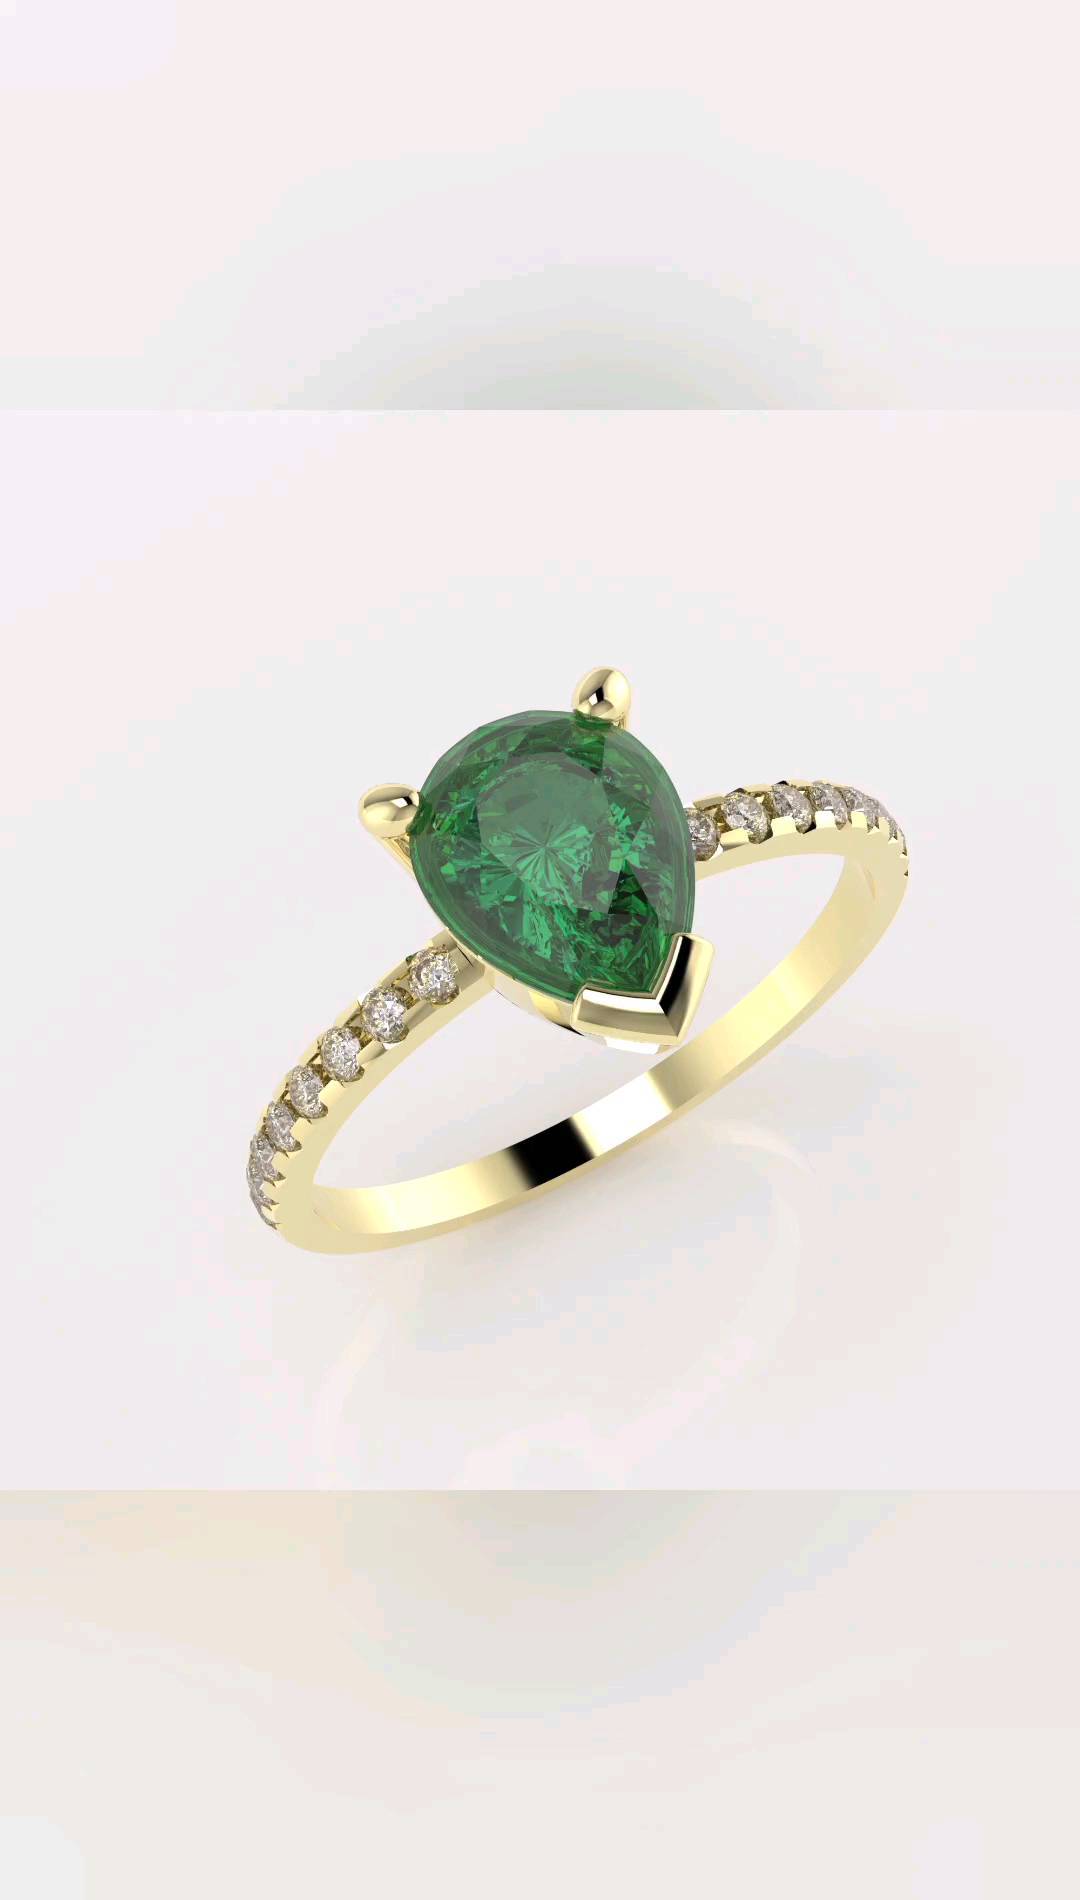 Predstavujeme vám náš nový návrh damskeho prsteňa ktorý bude zaradený aj do našej ponuky na e-shope. Kamene máme skladom či už sa rozhodnete pre zirkóny, moissanity alebo diamanty 💎. Objednávky prijímame na:
😉

aurona@aurona.sk
0914 23 23 82
www.aurona.sk

#vianocnydarcek #womensring #3dmodeling #sperkynamieru #sperky #zlatnickadielna #goldsmith #luxury #beautiful #prsten #darcek #love #topquality #zakazkovavyroba